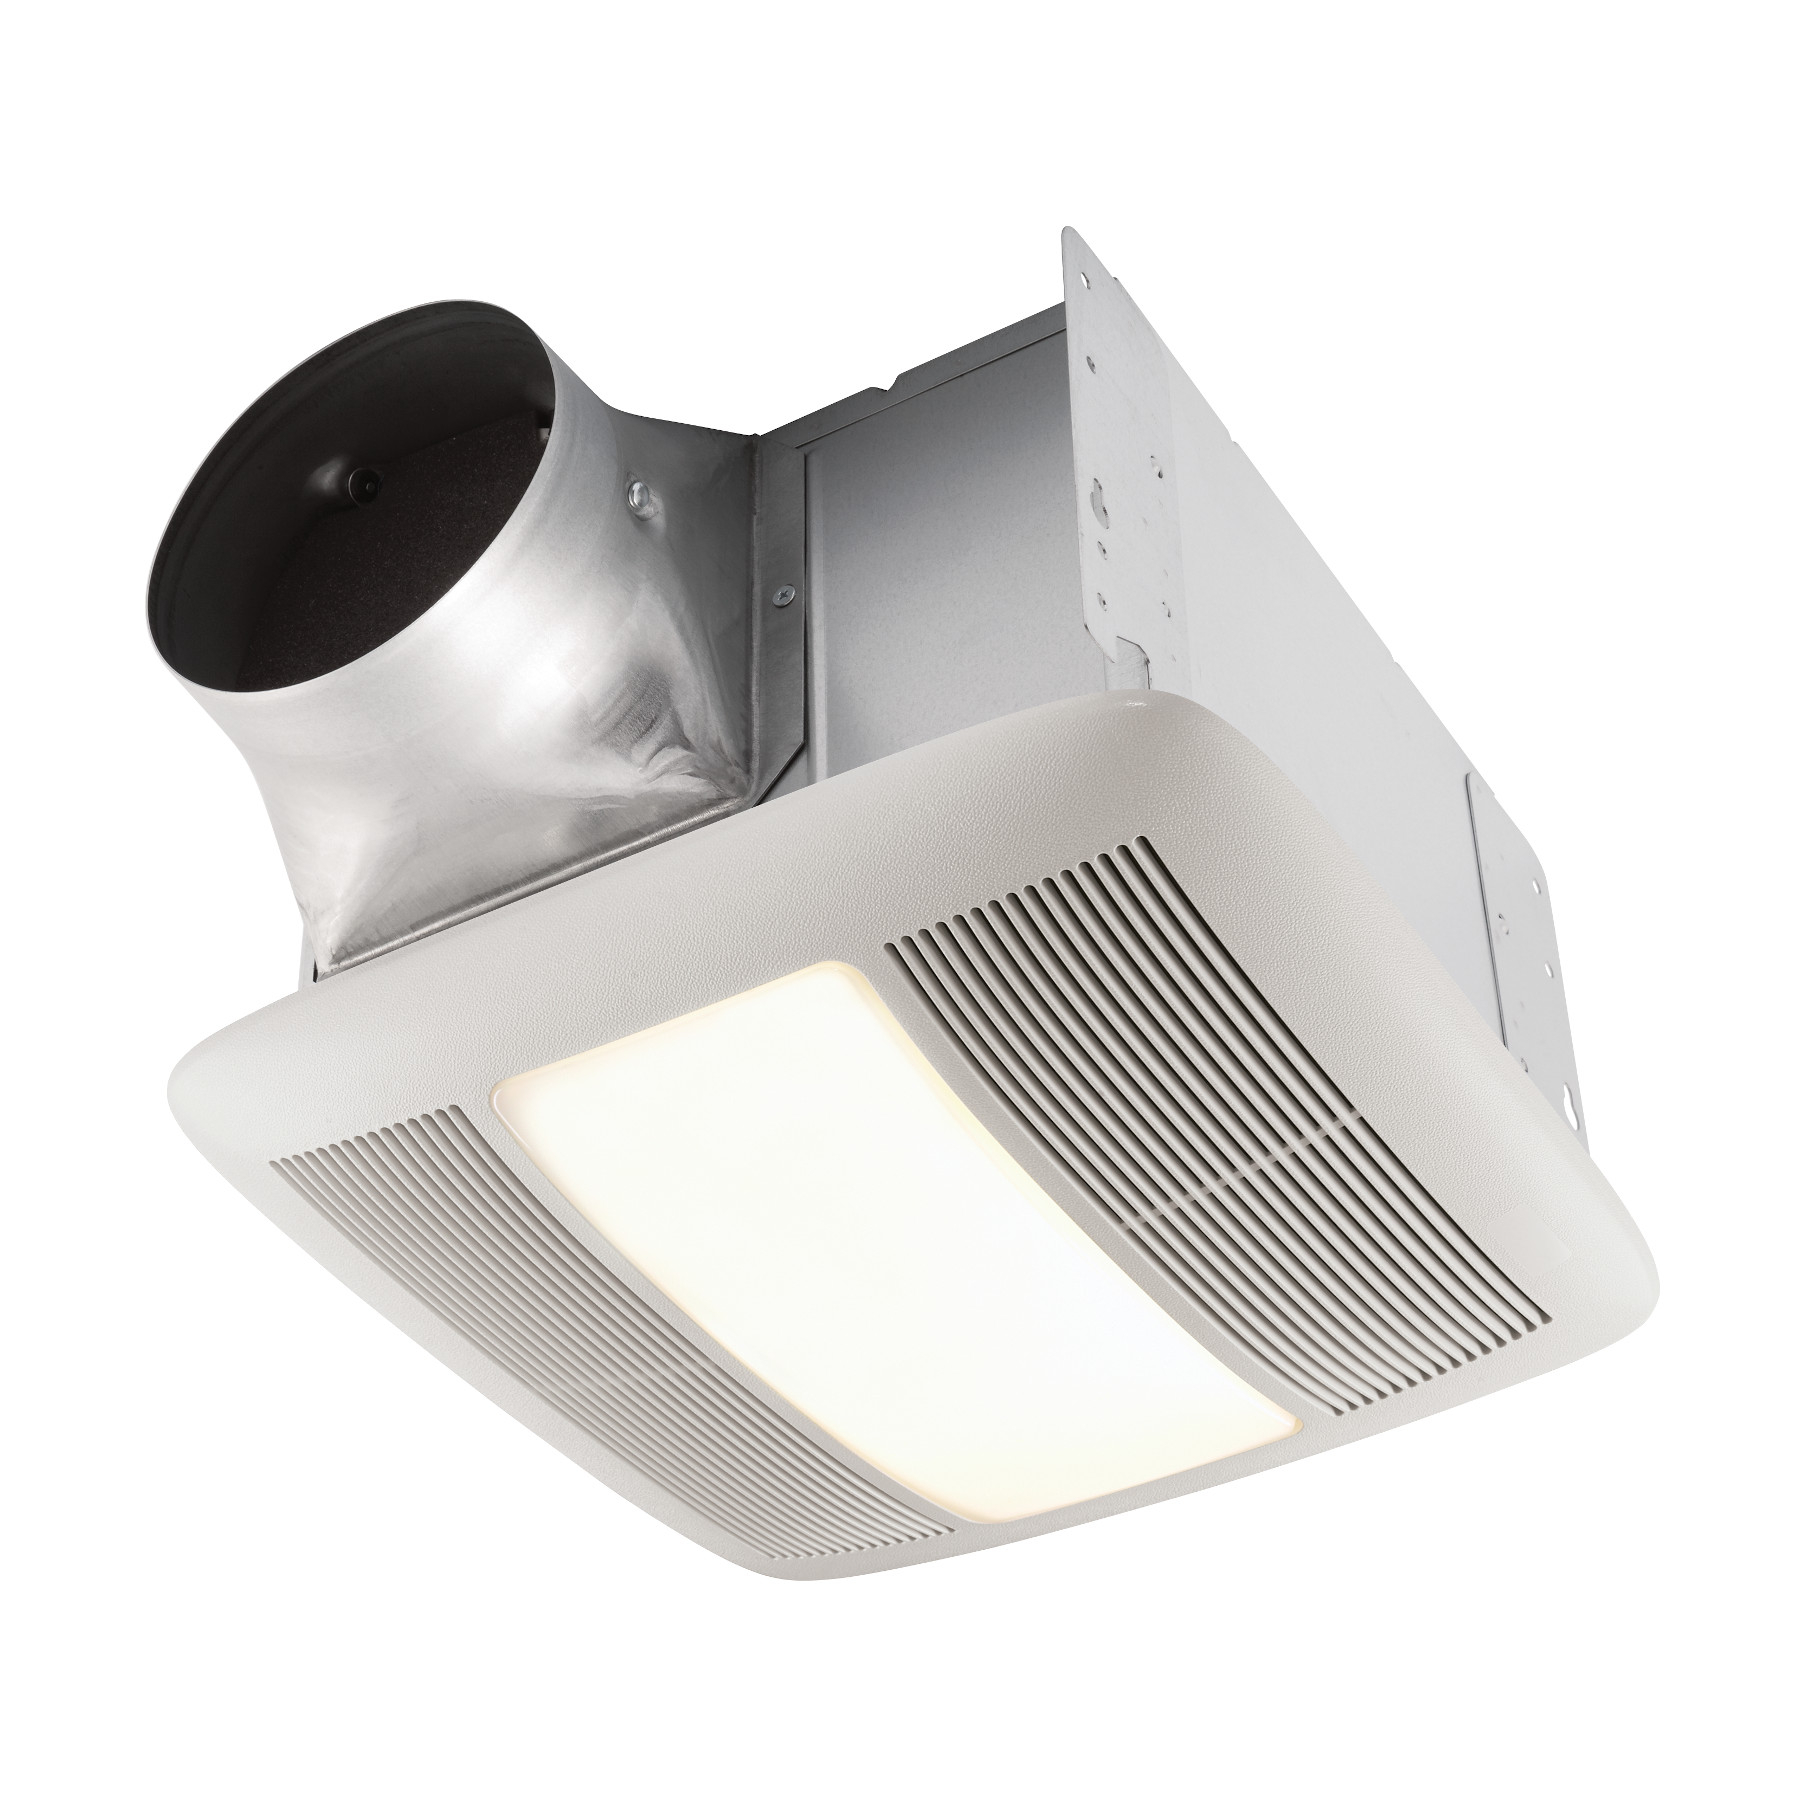 Broan 140 Cfm Ventilation Fan Light With Night Lightquiet Bathroom Fanlightnight Light Energy St regarding dimensions 1800 X 1800